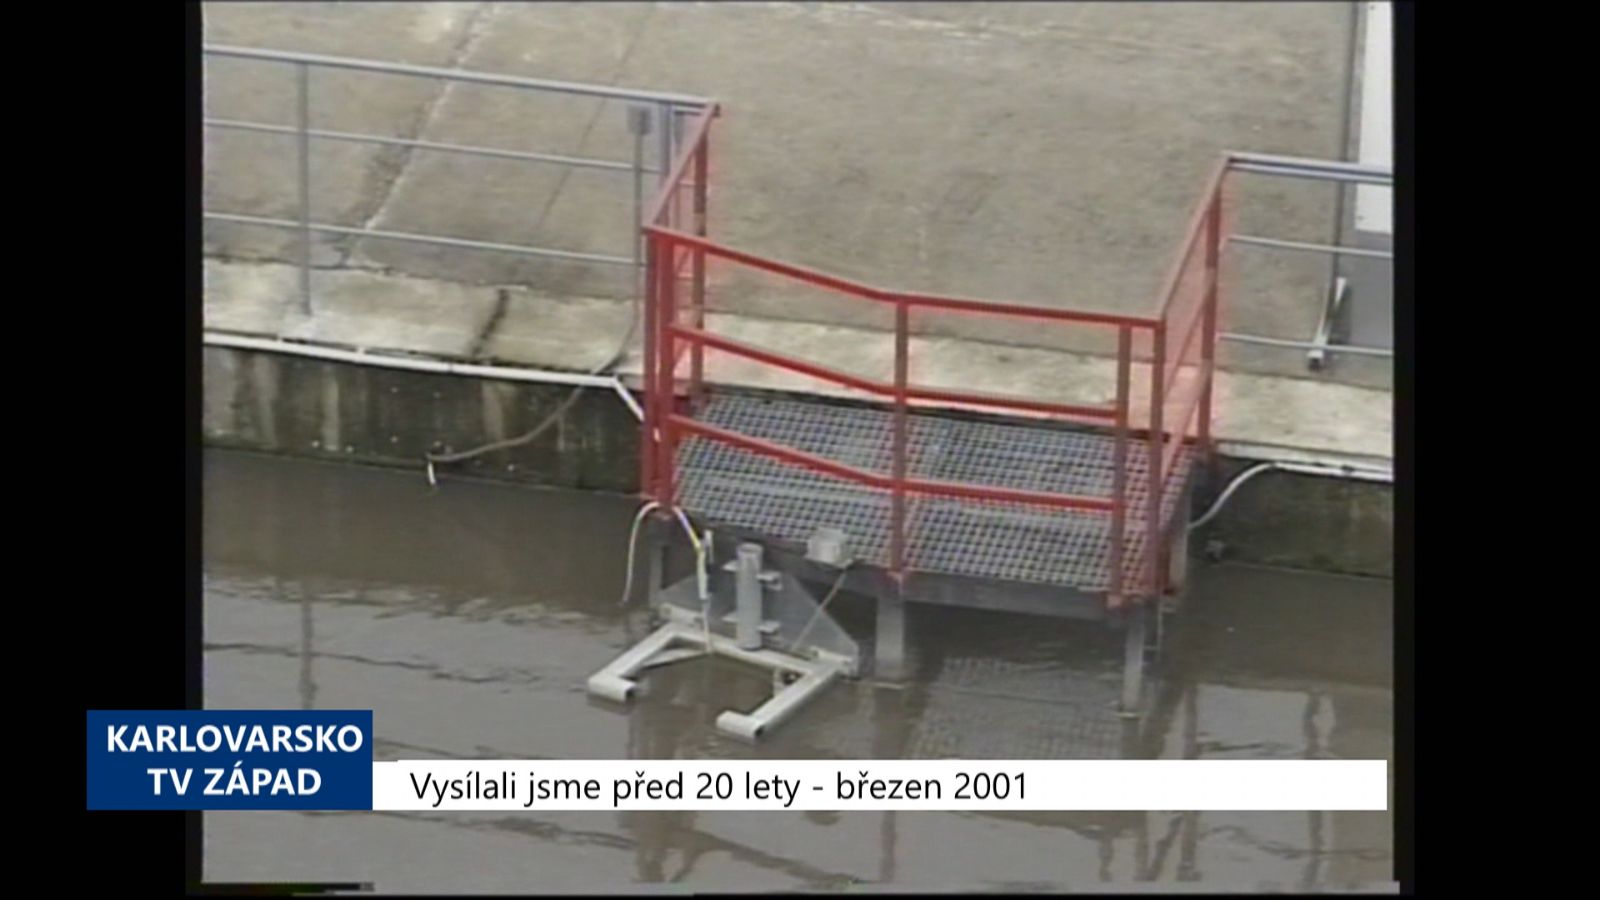 2001 – Region: CHEVAK zdraží vodné i stočné (TV Západ)